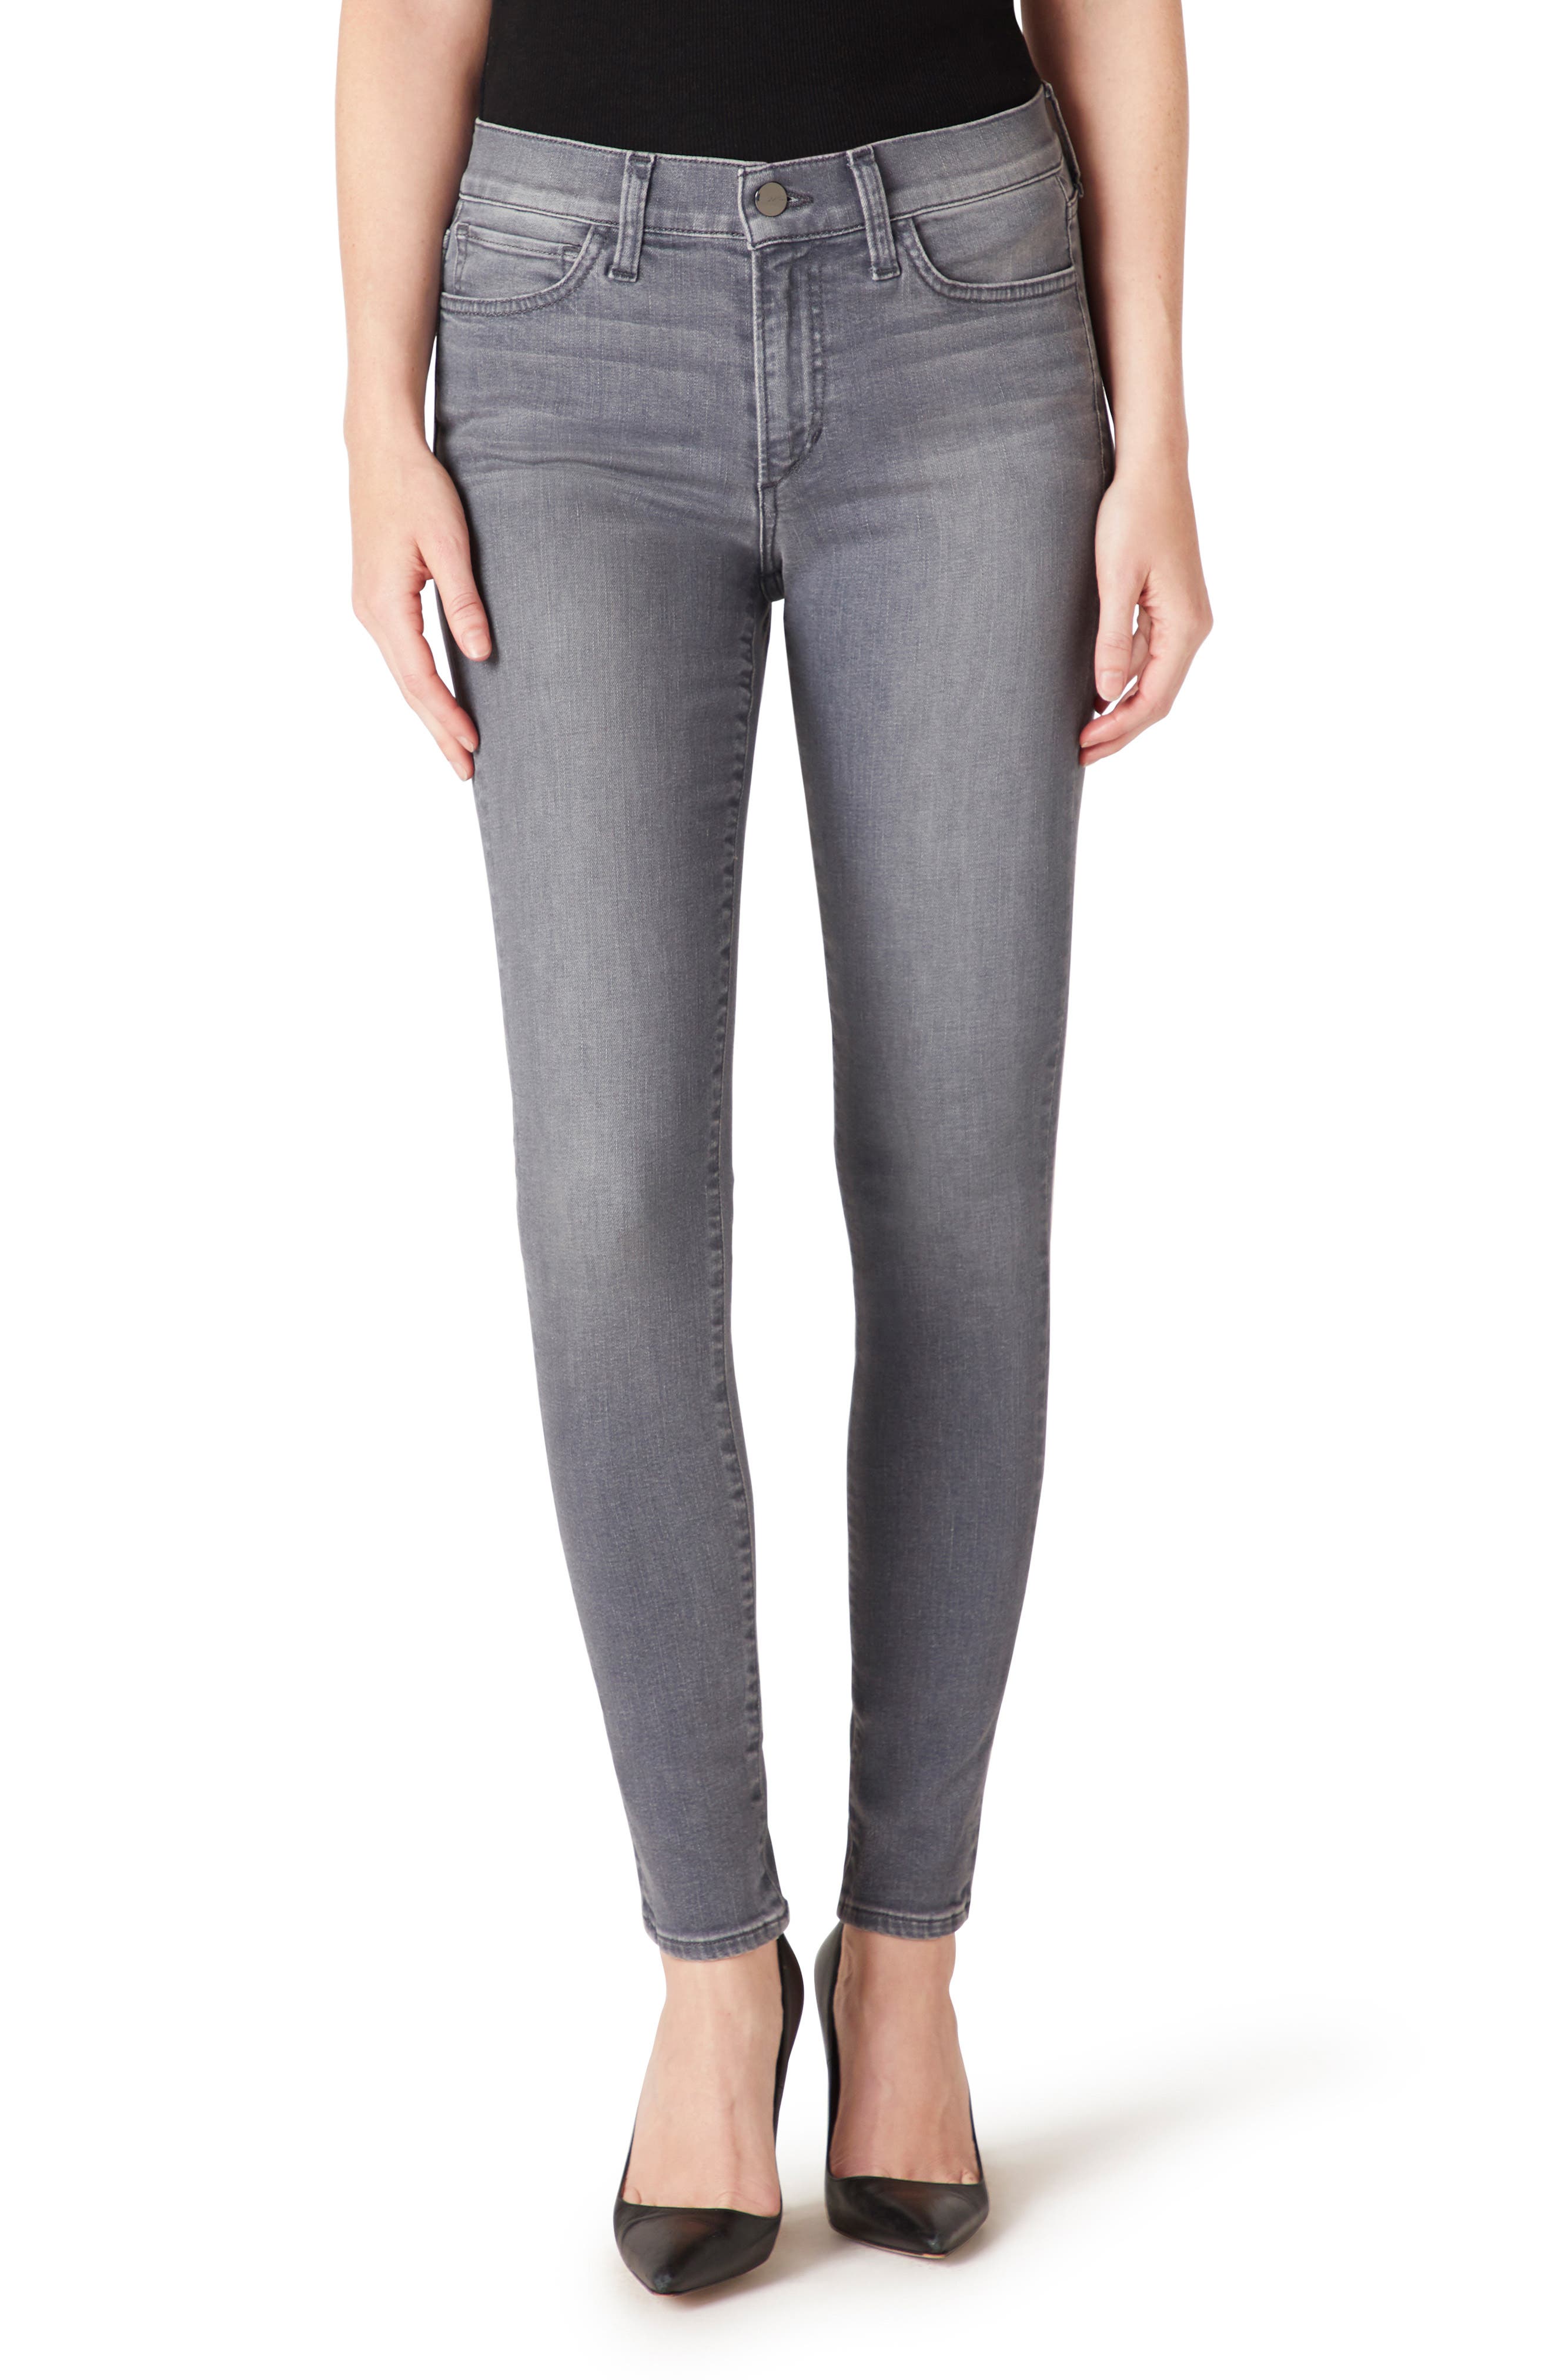 womens grey jeans skinny